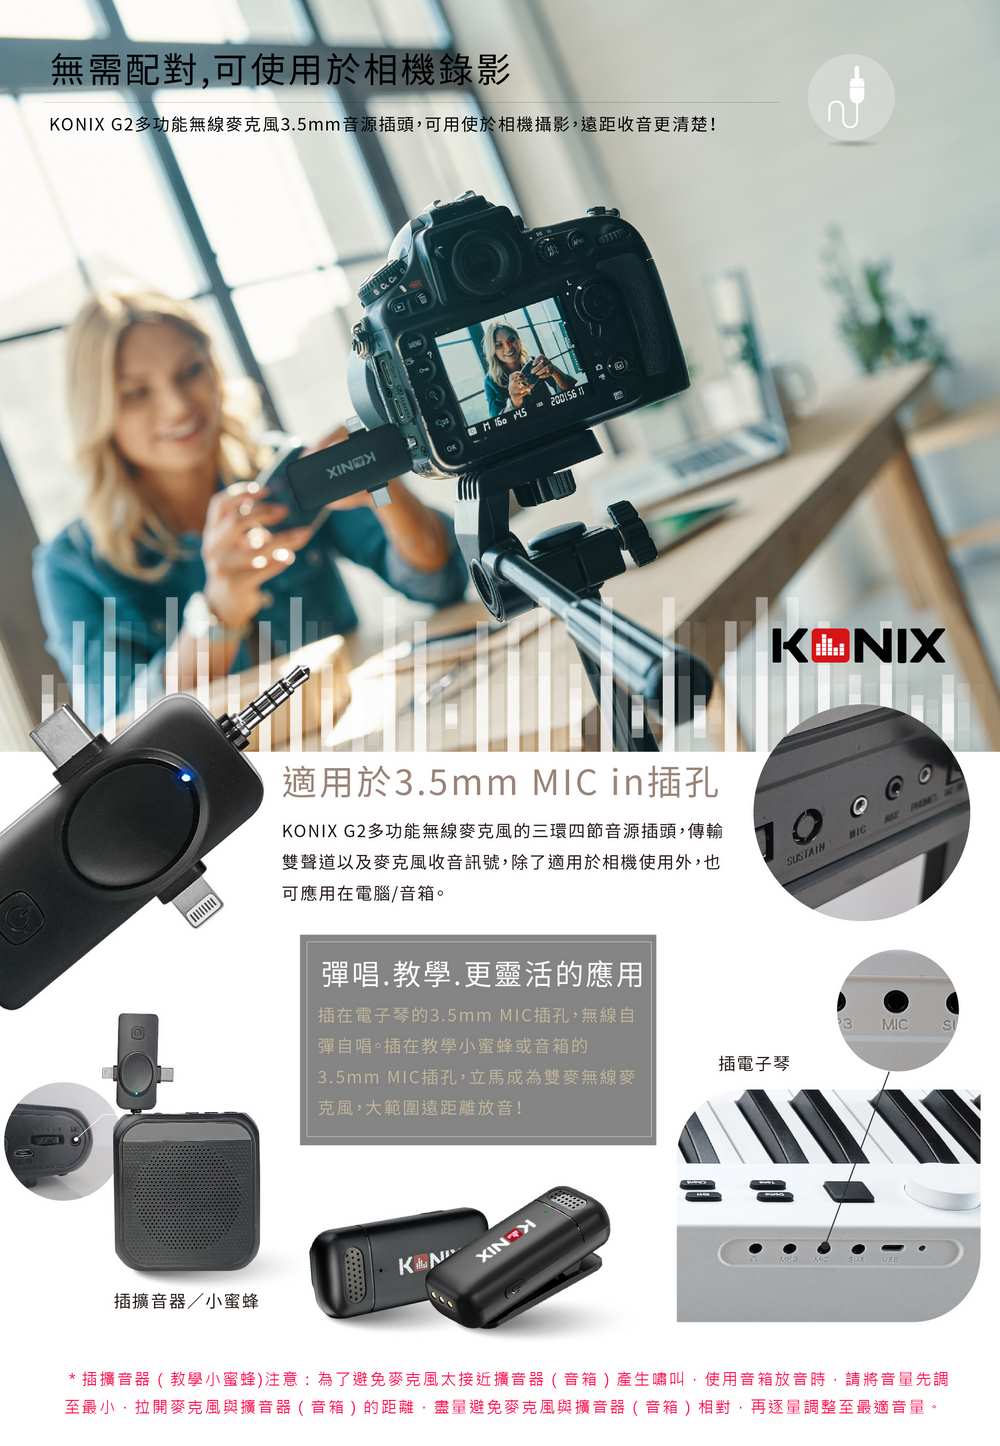 KONIX G2 多功能無線麥克風,智慧降噪,全指向性,360度收音,手機直播